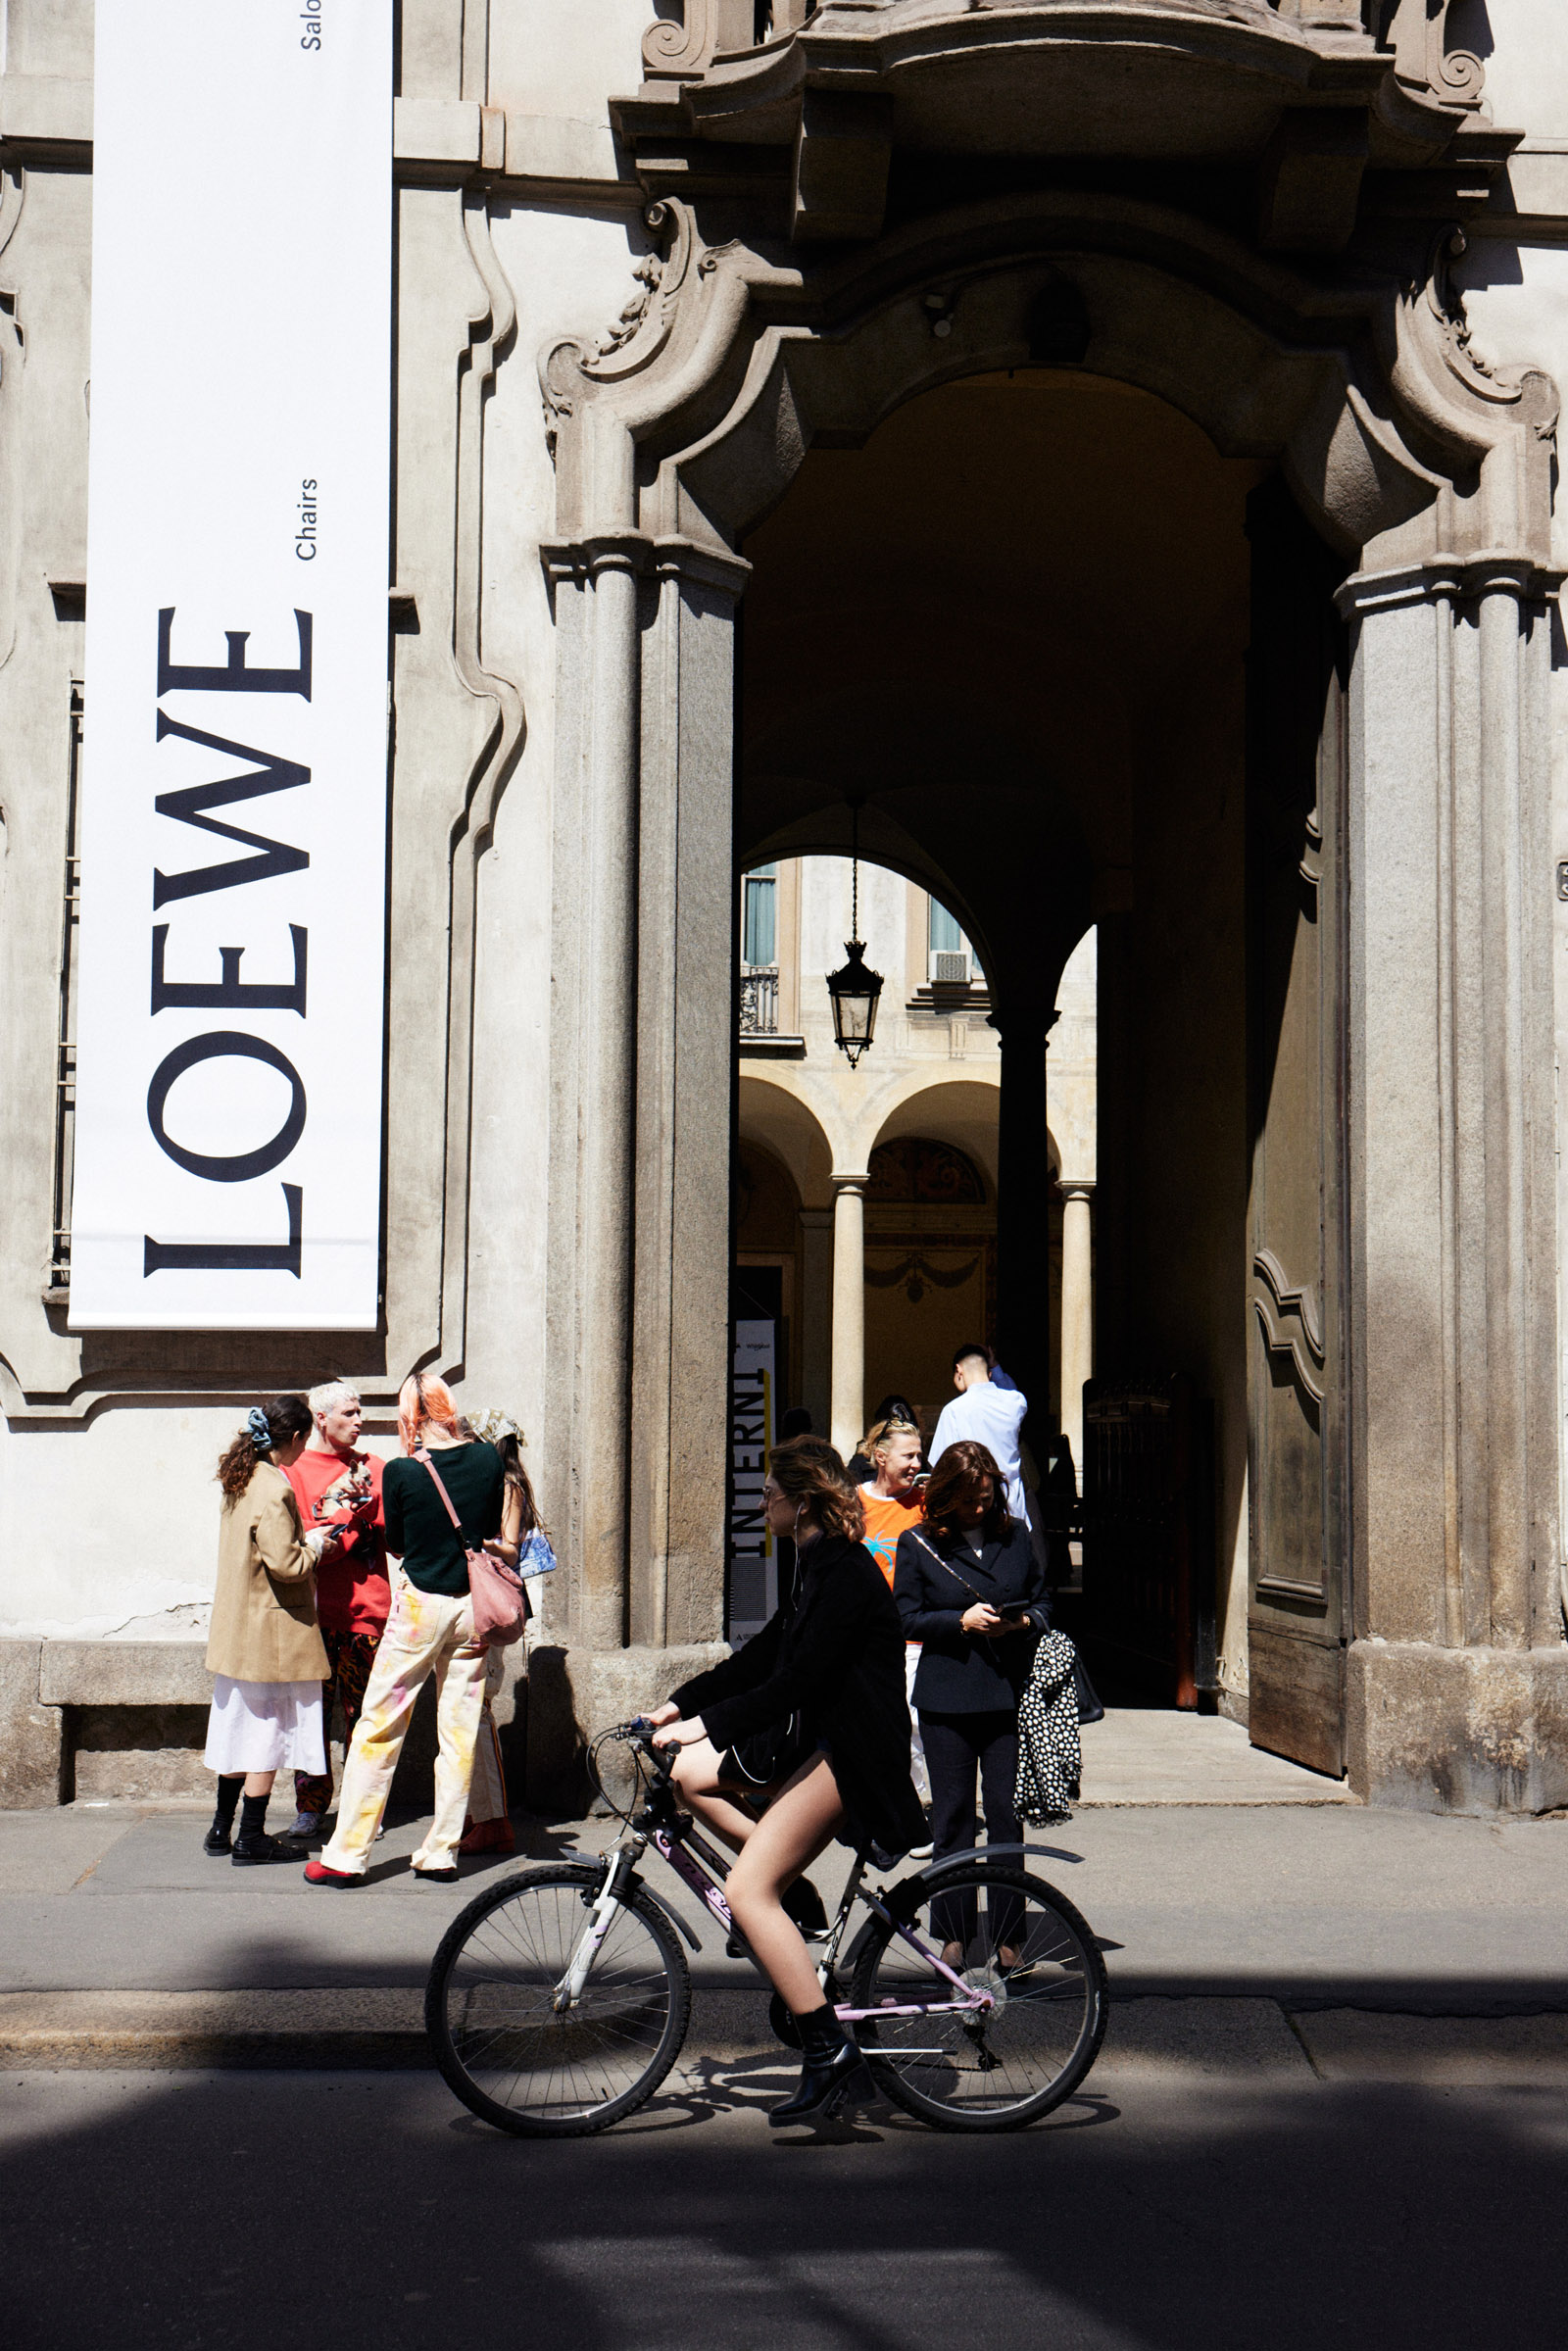 Louis Vuitton at Milan Design Week 2023